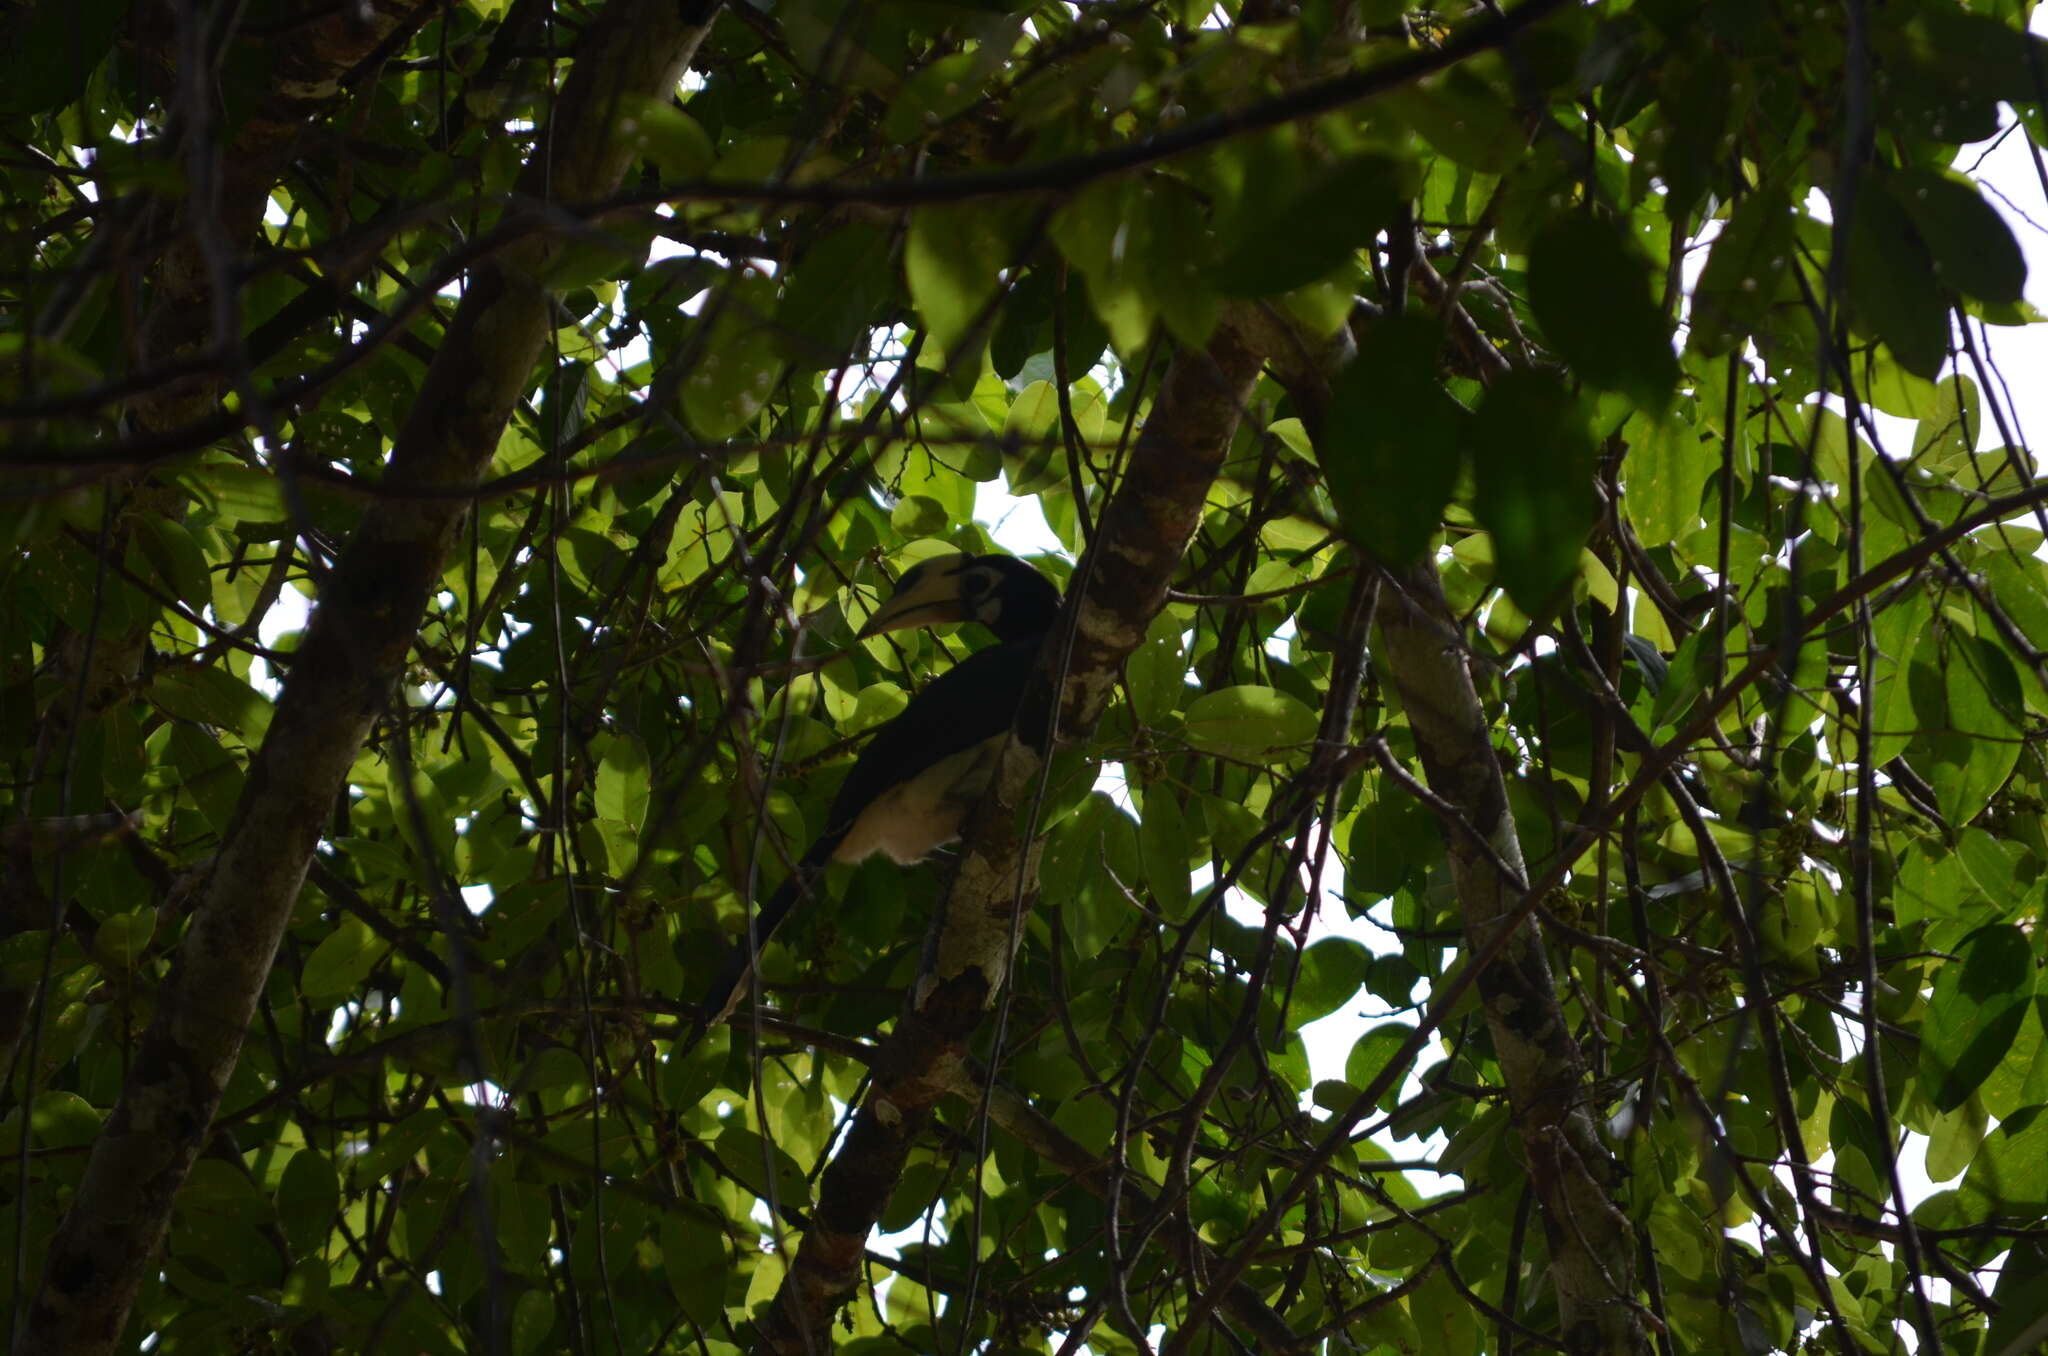 Image of Oriental Pied Hornbill